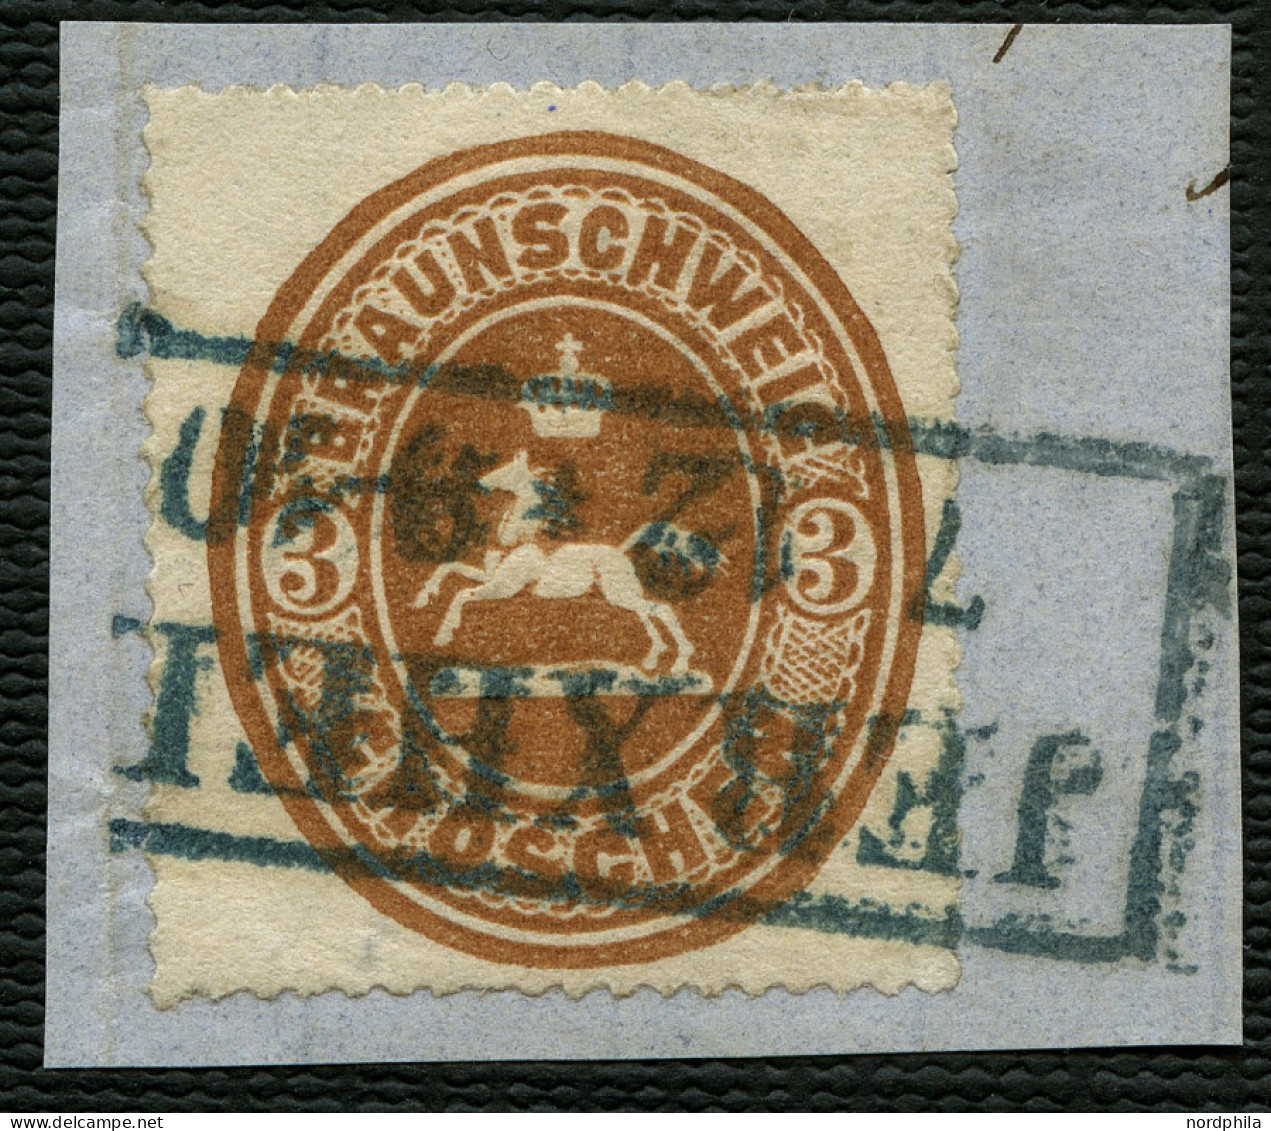 BRAUNSCHWEIG 20 BrfStk, 1865, 3 Gr. Orangebraun, Mit Blauschwarzem R2 JERXHEIM, Prachtbriefstück,  Kurzbefund Lange - Braunschweig